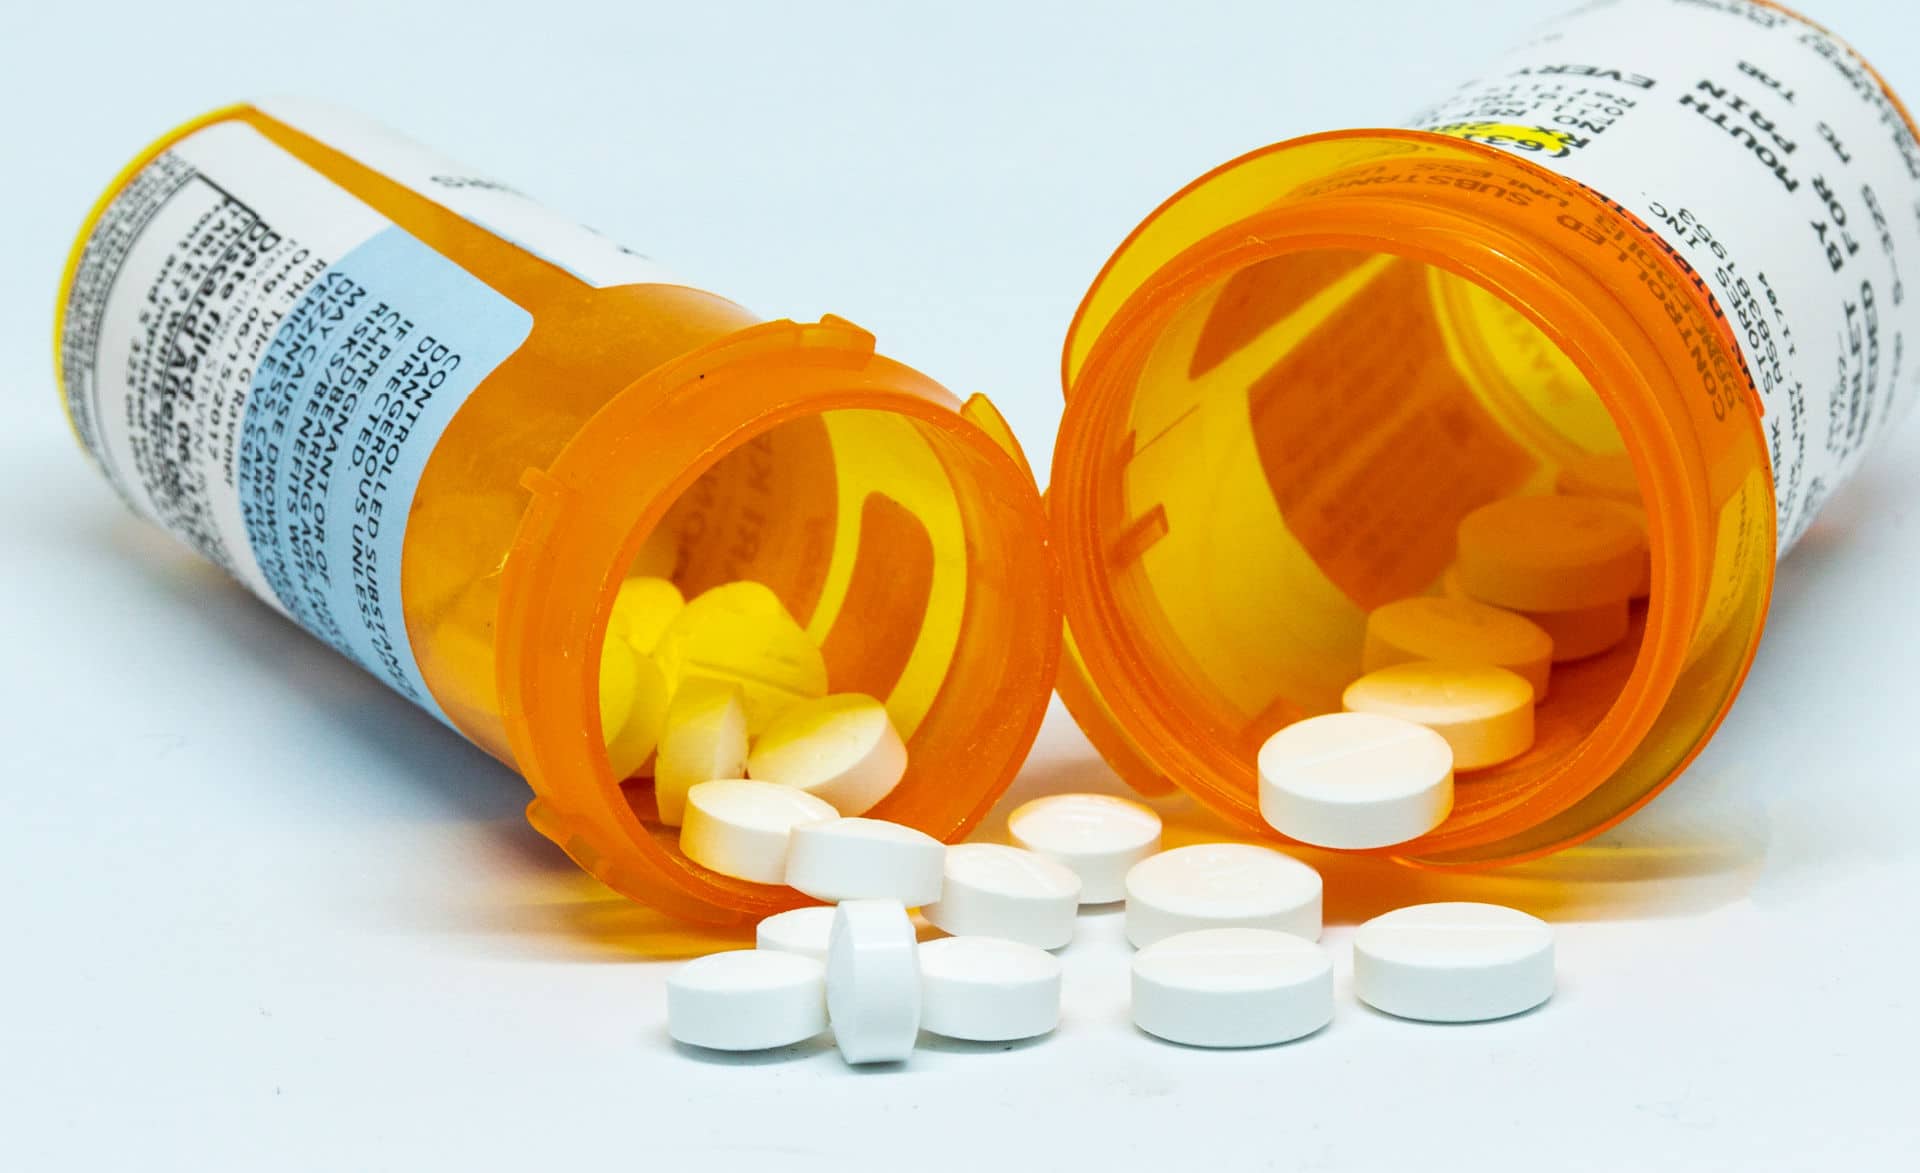 Prescription pain pills next to opioid prescription bottles.